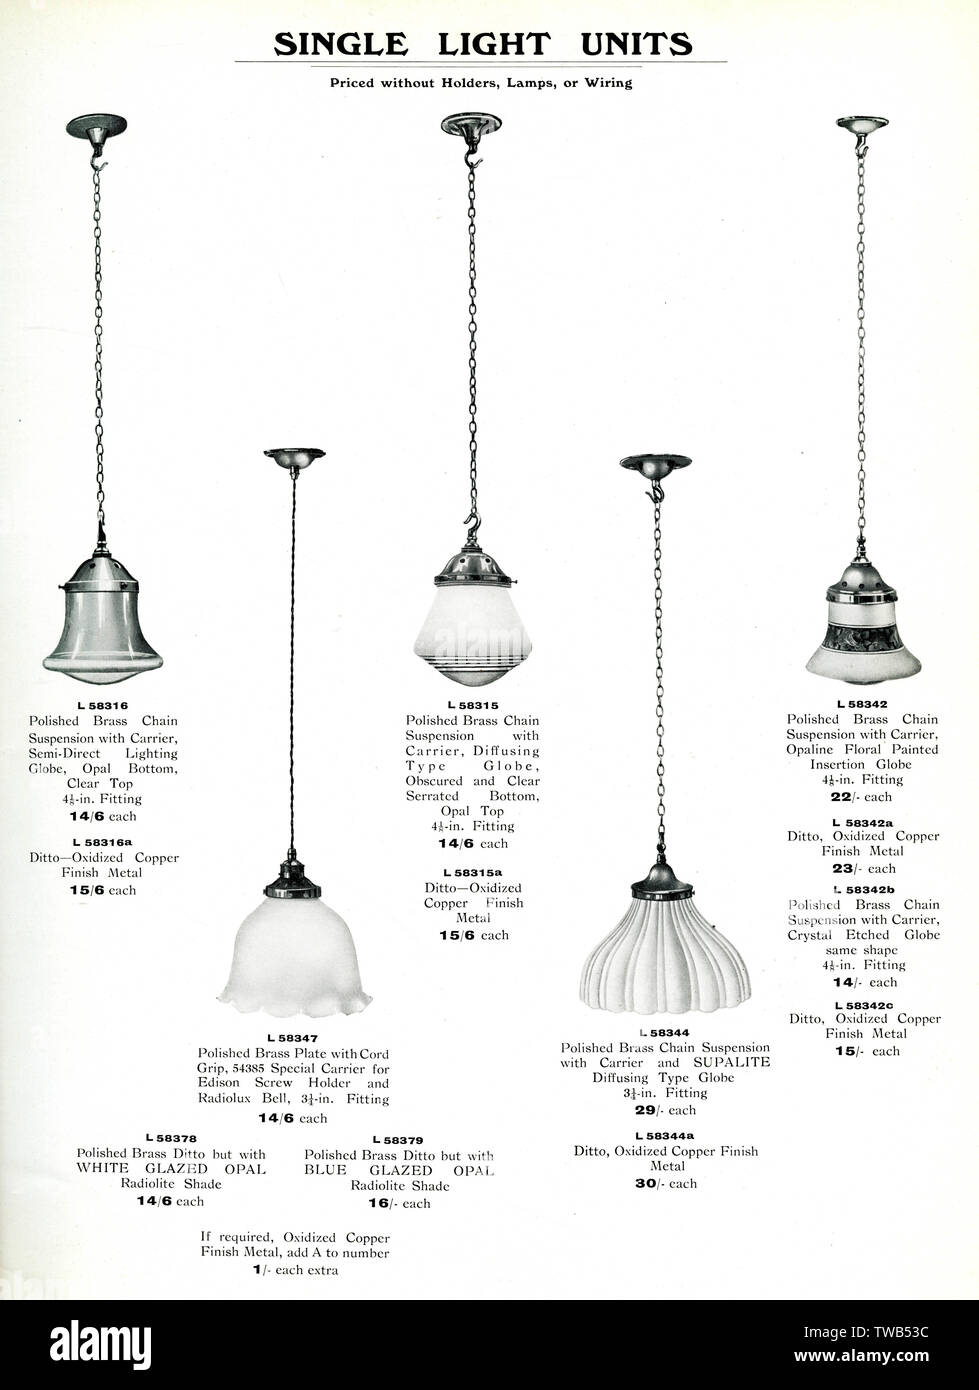 Katalog für elektrische Beleuchtungskörper, einzelne Lichteinheiten Stockfoto